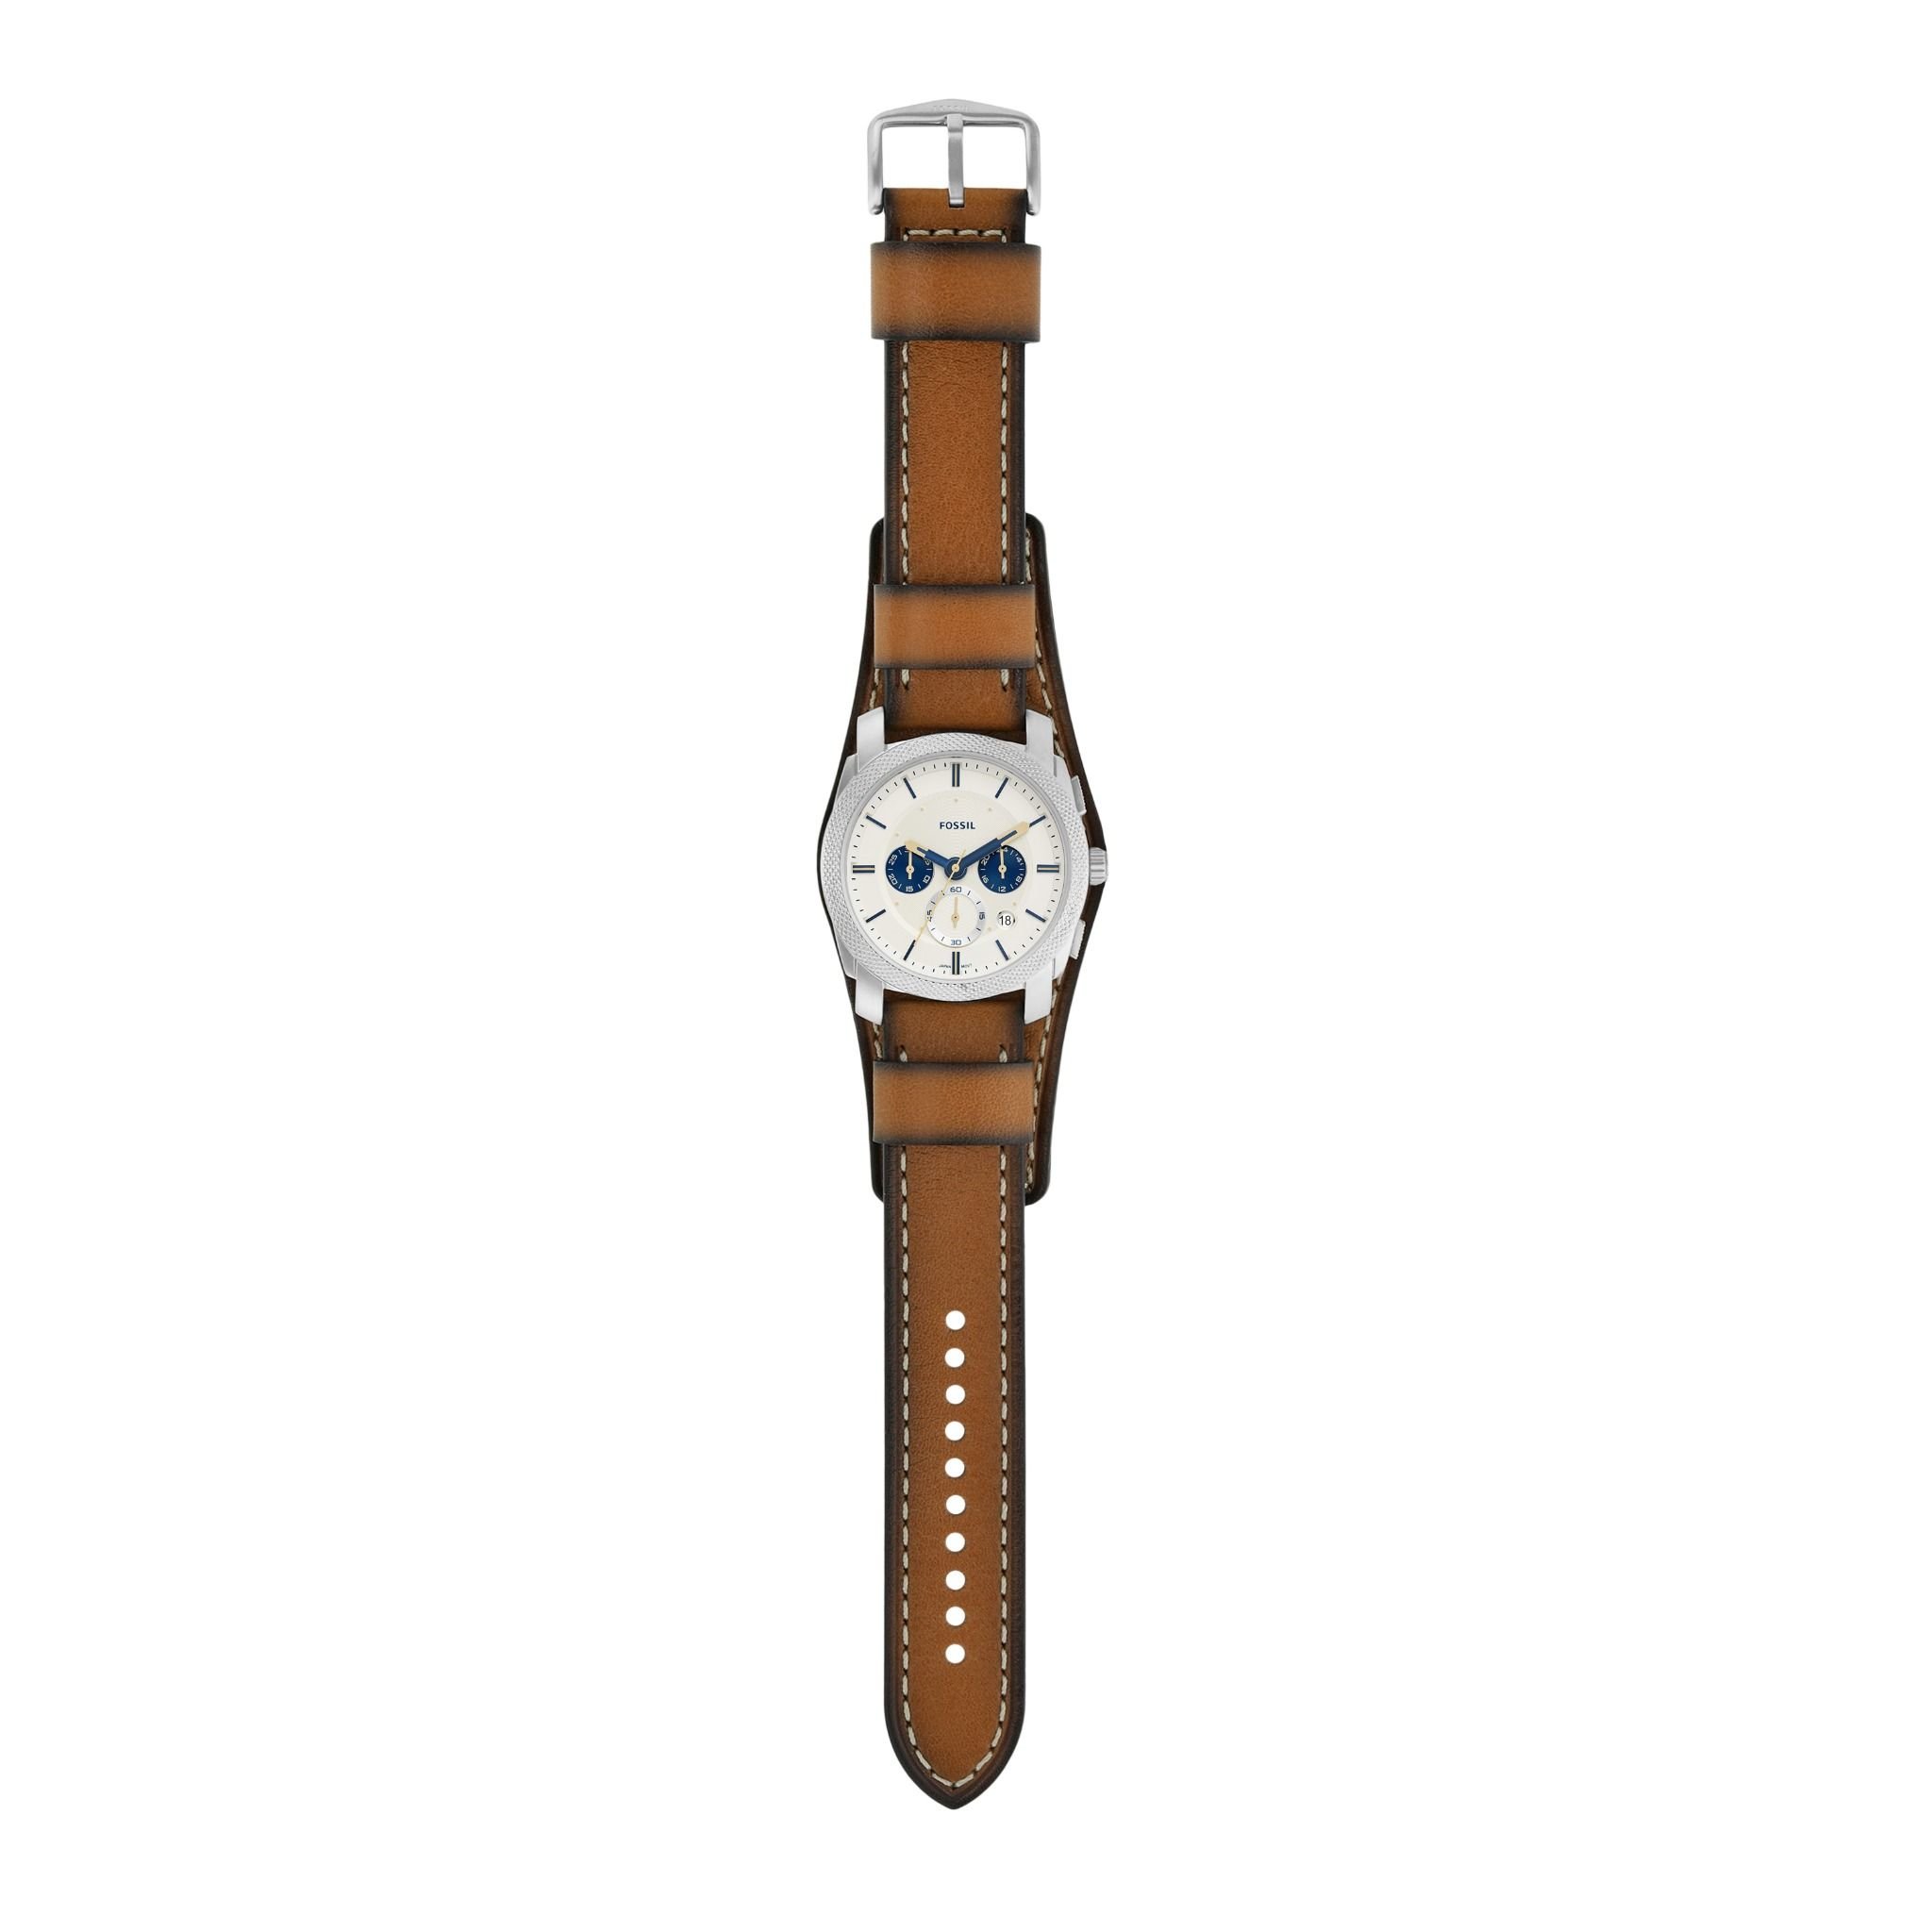  Đồng hồ nam Fossil MACHINE FS5922 dây da - màu nâu 